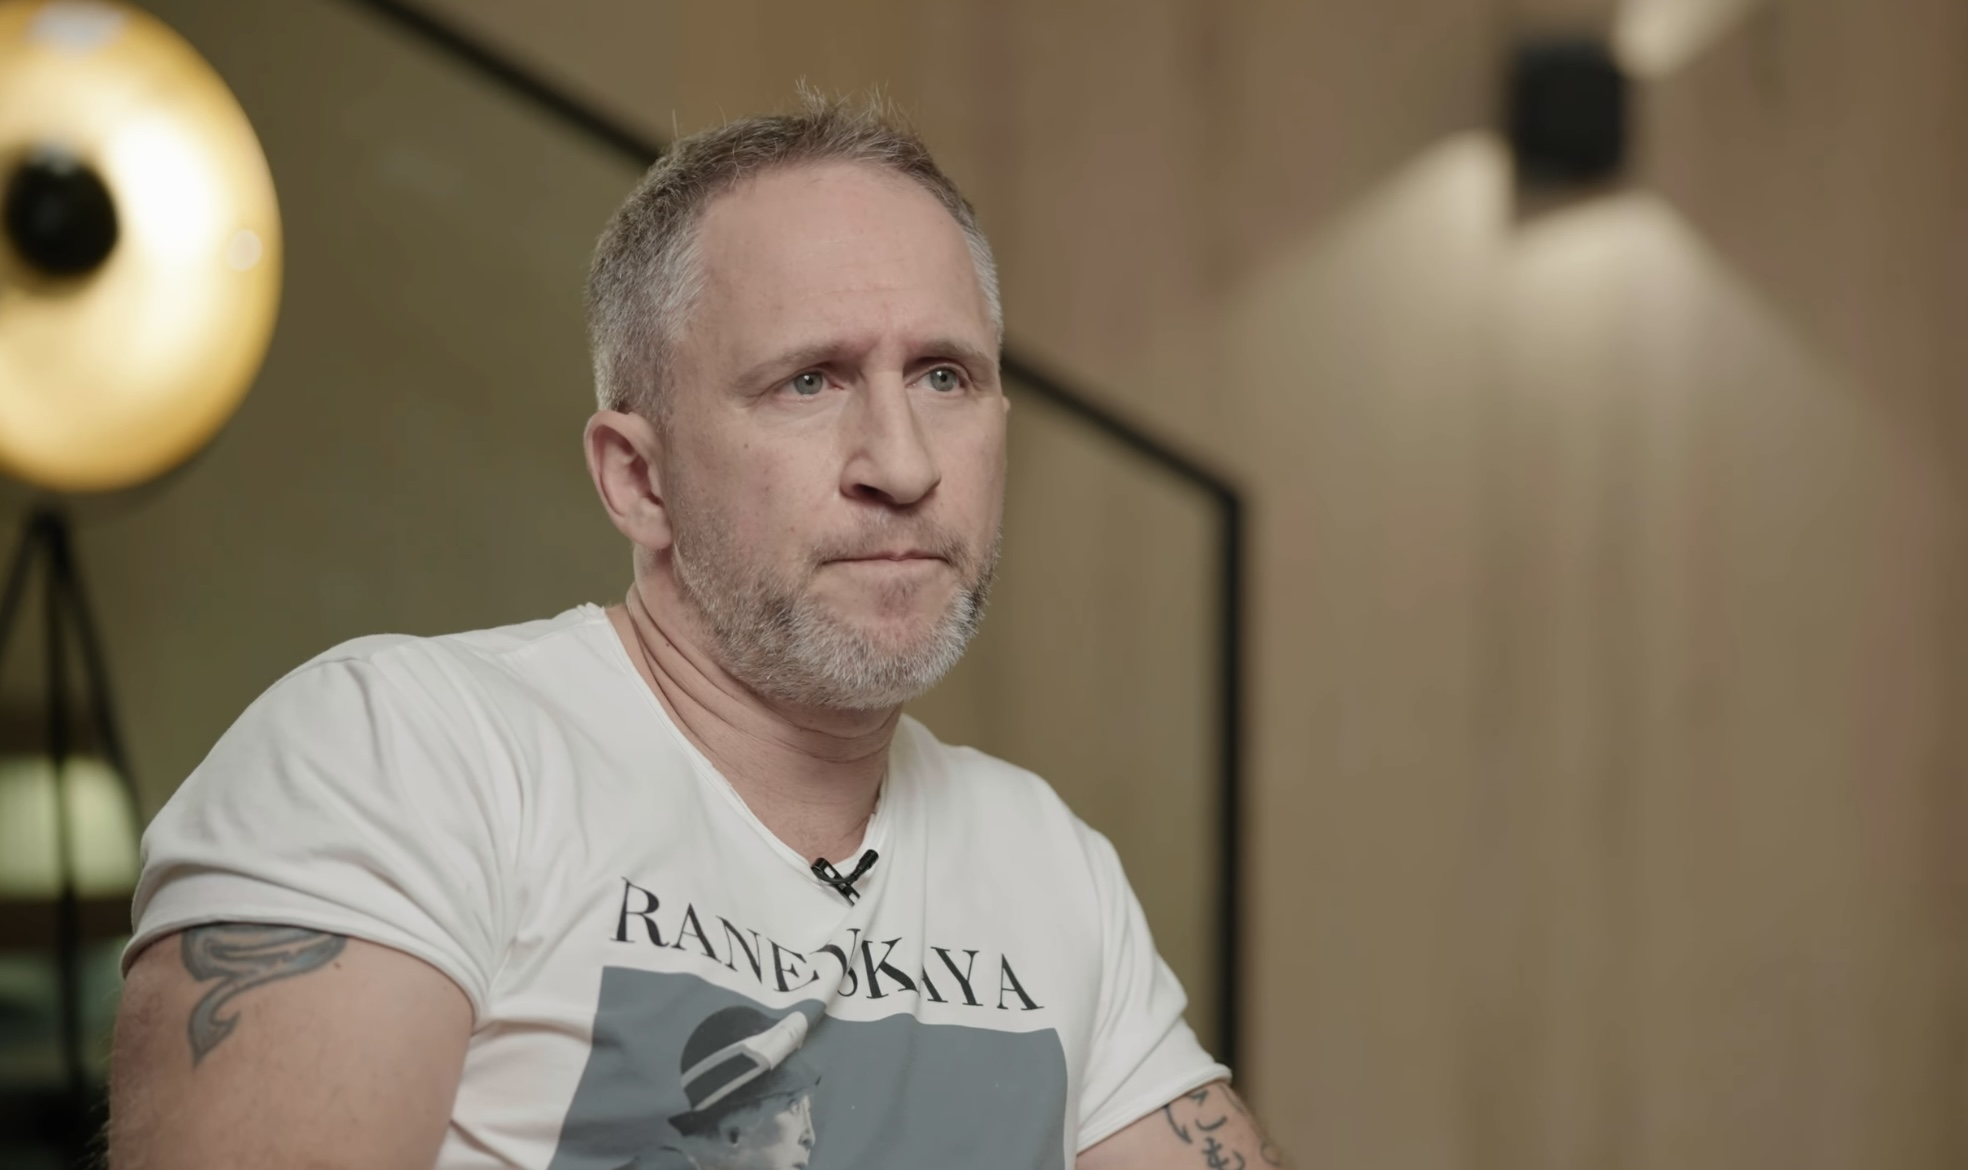 Путинист Оскар Кучера надел на интервью к Дудю футболку от украинского бренда: производители отреагировали